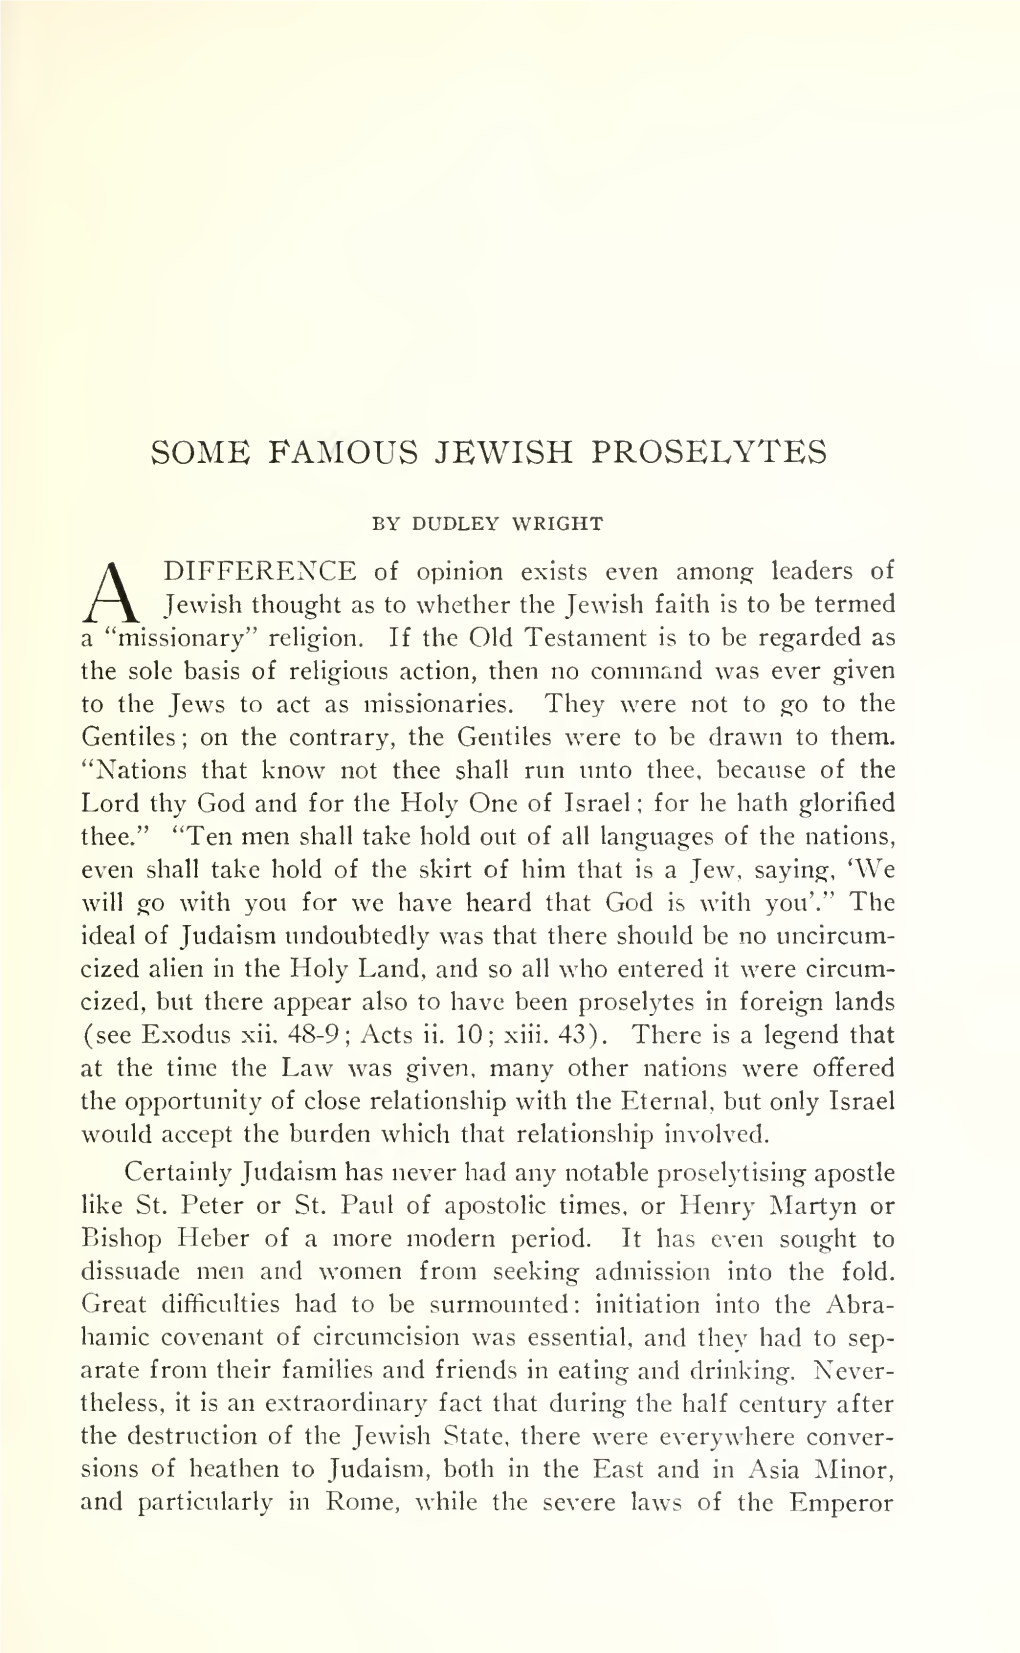 Some Famous Jewish Proselytes